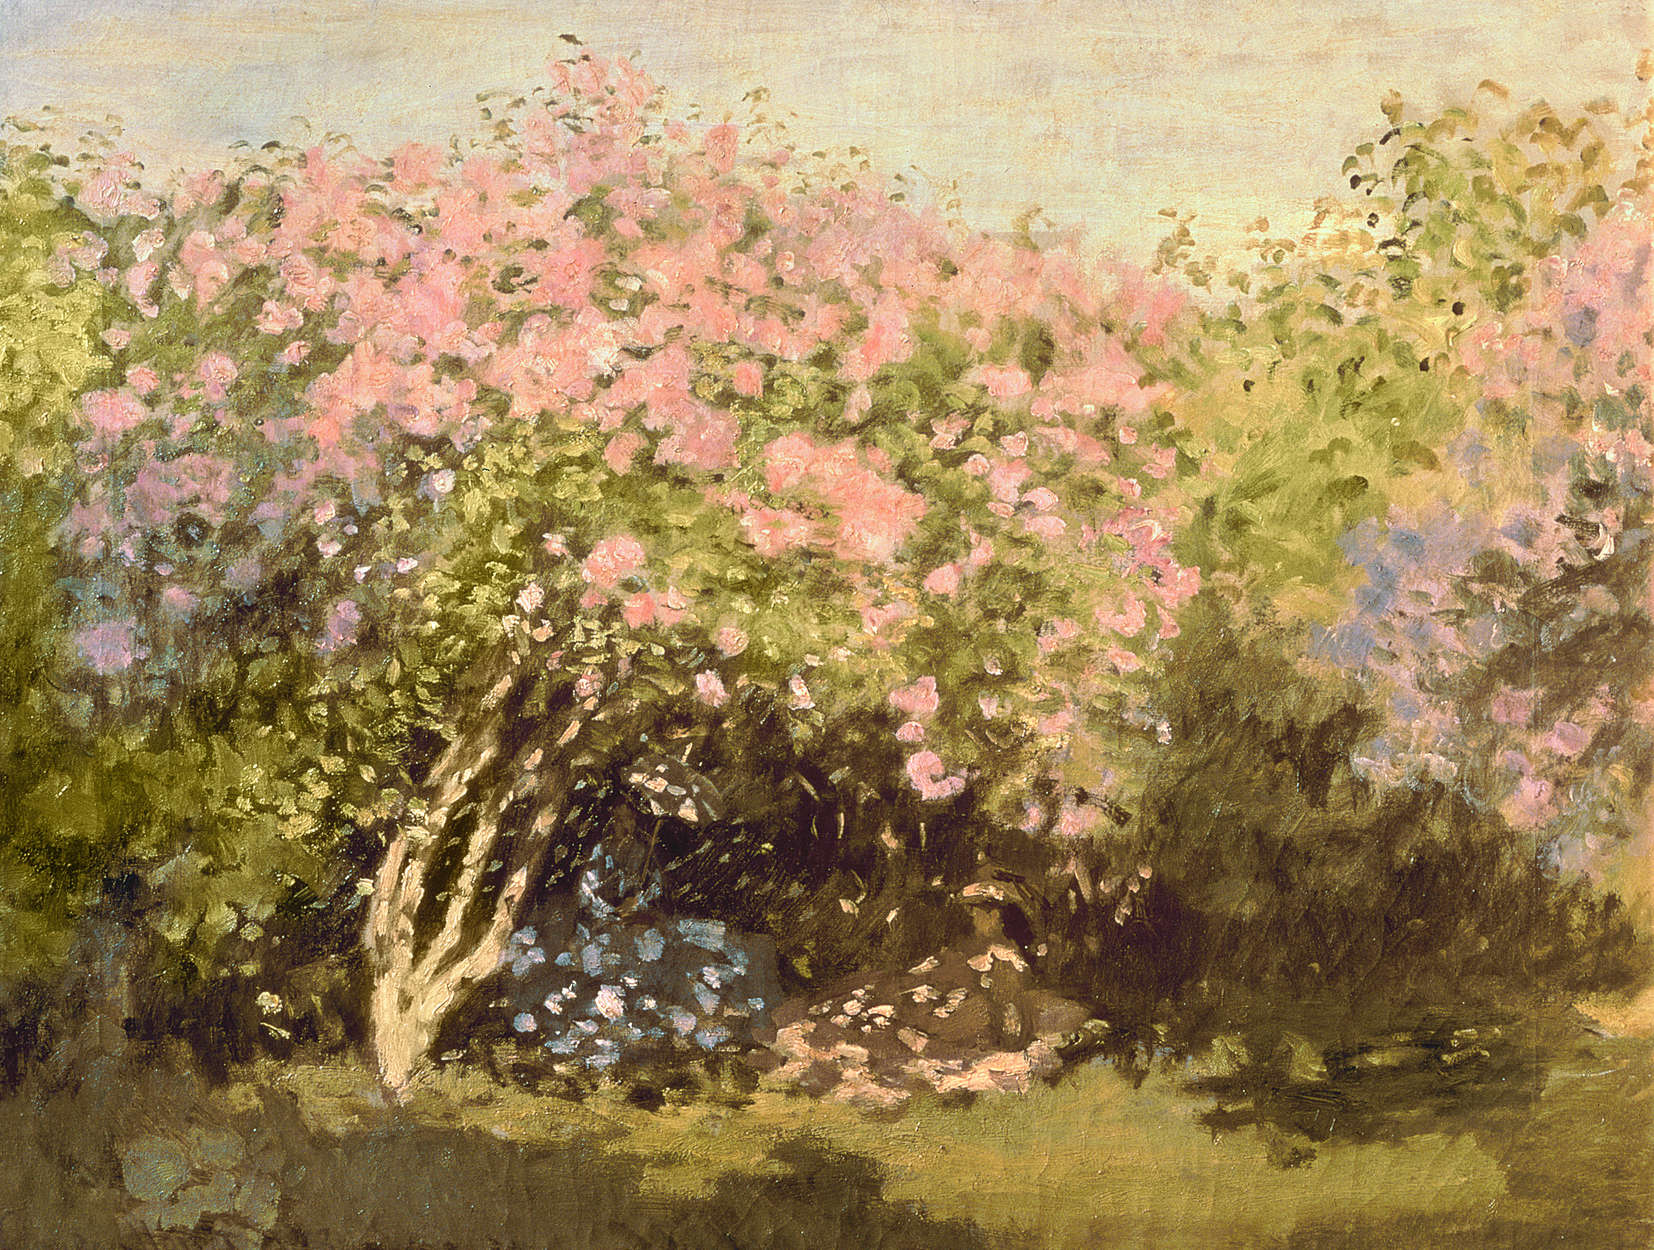             Fototapete "Blühender Flieder in der Sonne" von Claude Monet
        